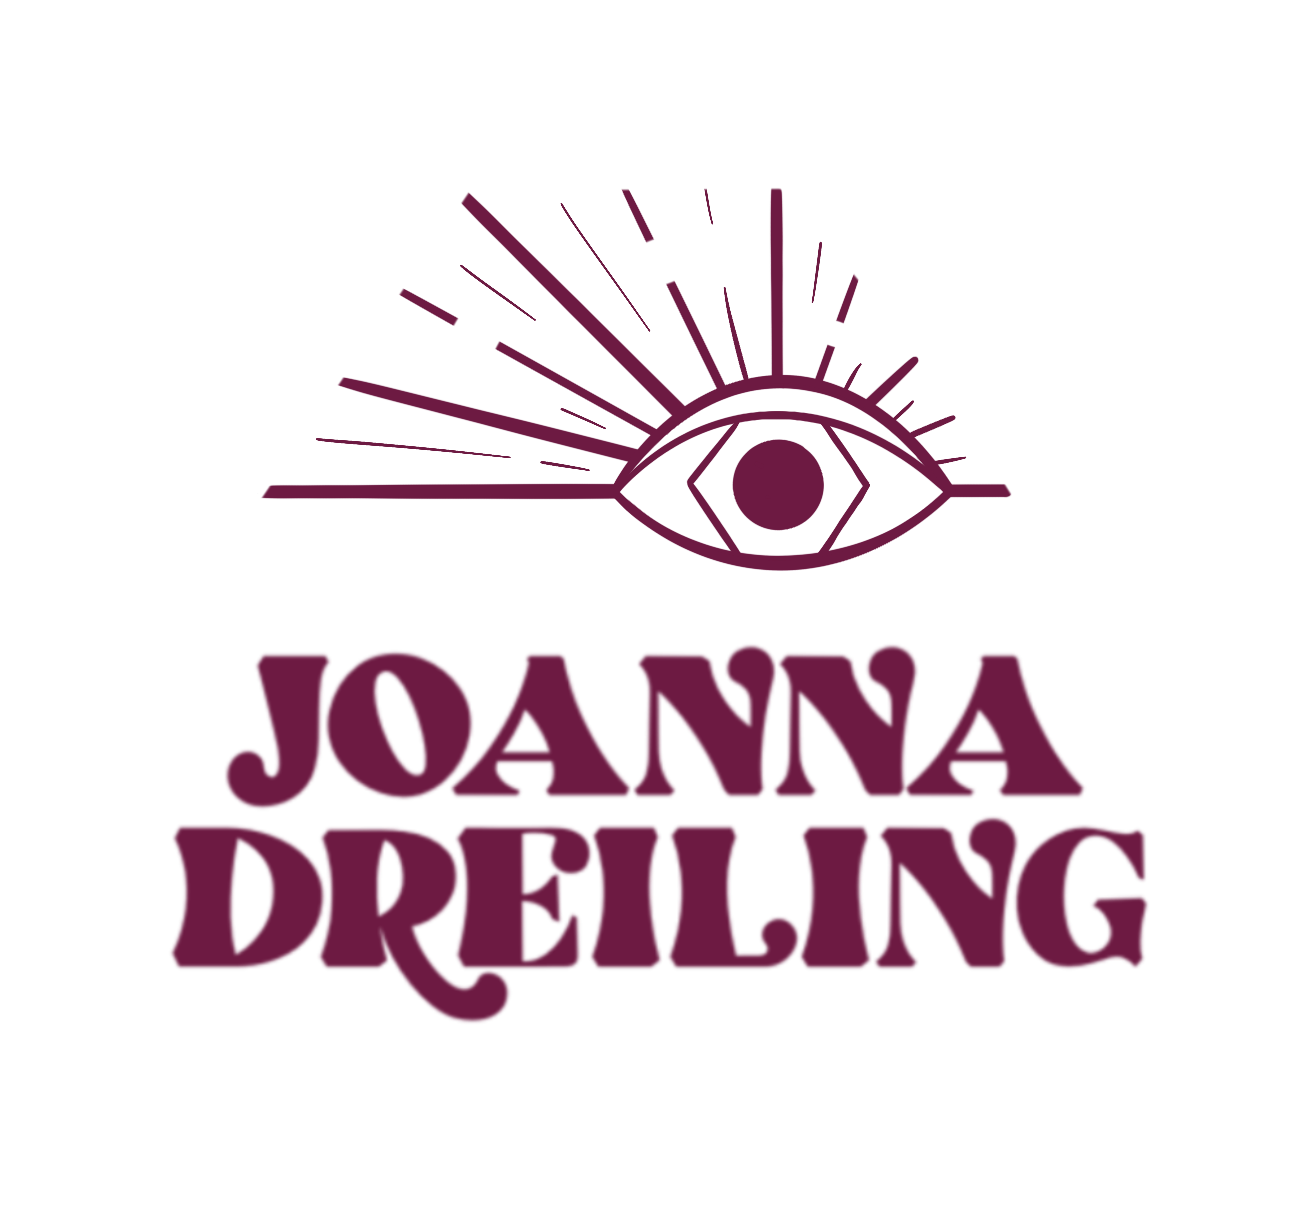 Joanna Dreiling